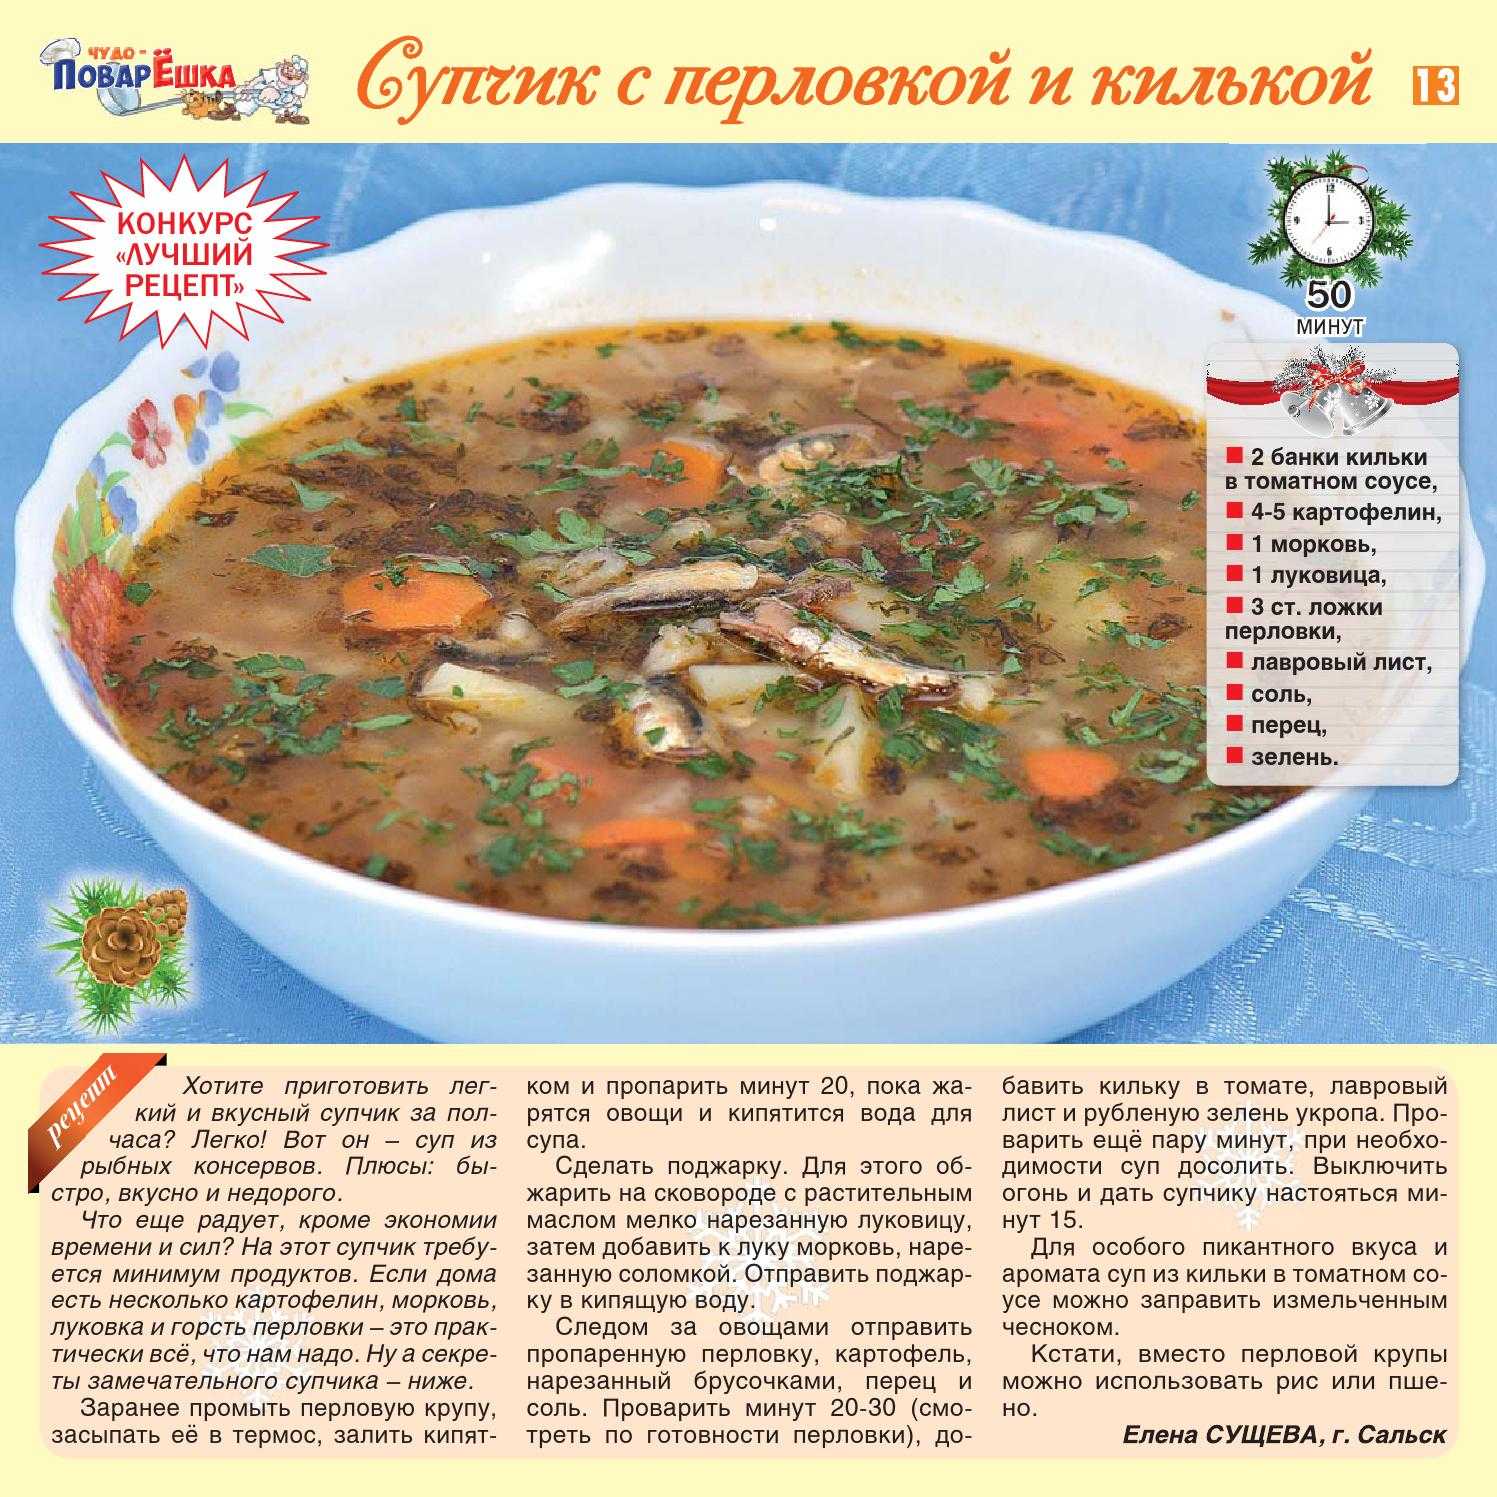 Рыбный суп из консервов калорийность. Суп из кильки в томатном соусе рецепт. Суп из консервы килька в томате. Суп с консервой килька. Суп с килькой в томатном соусе рецепт.